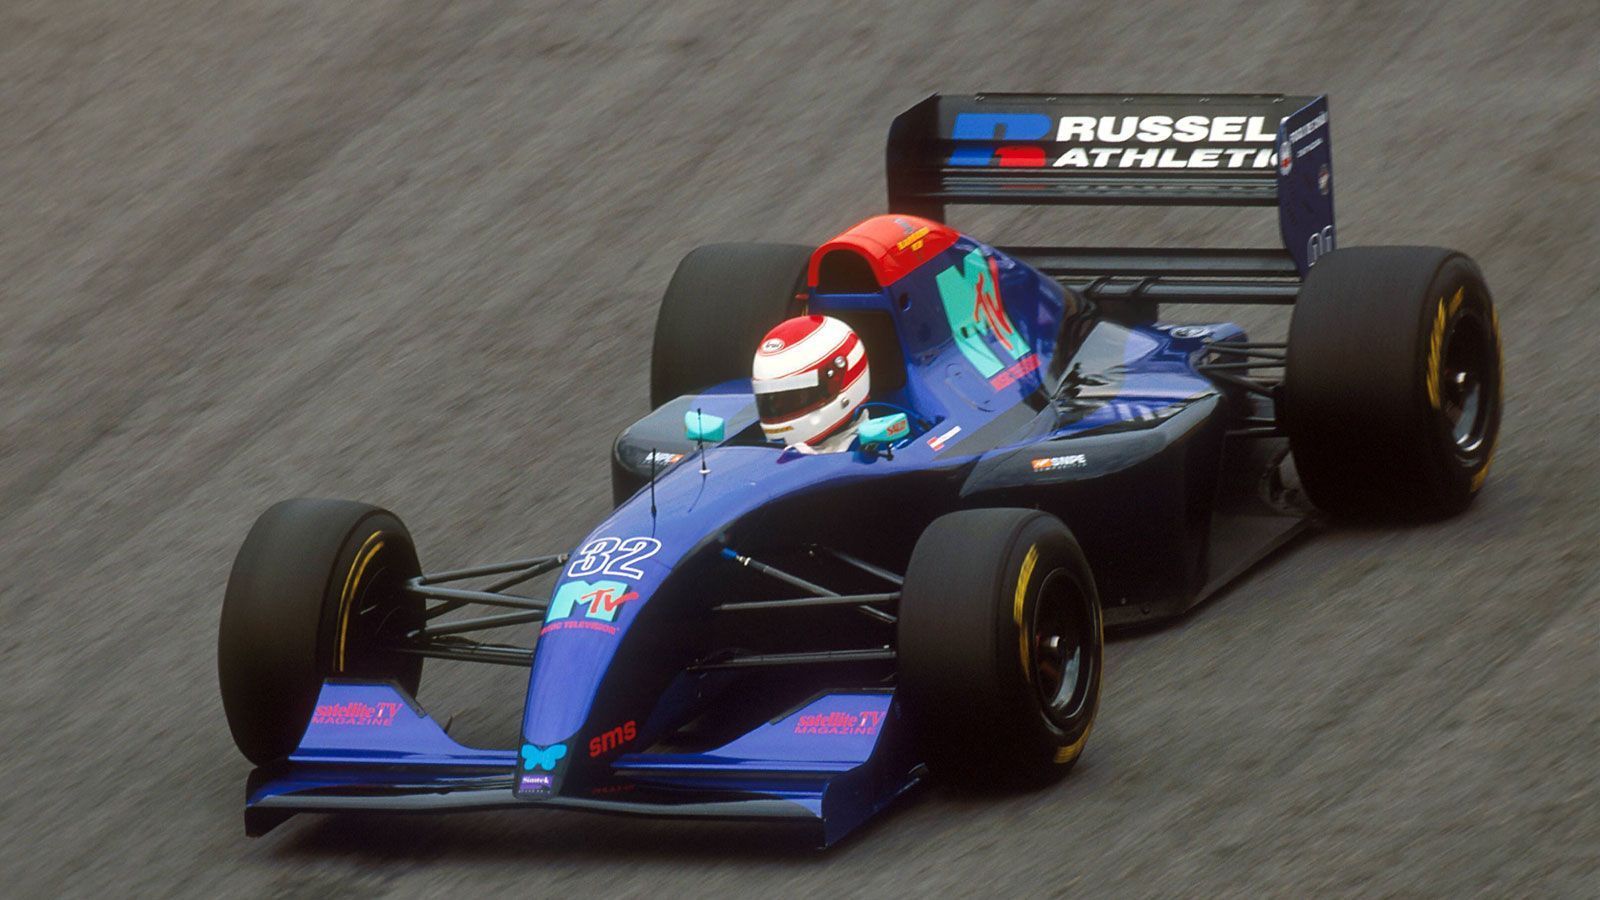 
                <strong>1994: Das tragischste Wochenende der Formel-1-Geschichte</strong><br>
                Allerdings ist die Strecke in Imola auch der Ort des tragischsten Rennwochenendes in der Formel-1-Geschichte. Mit Roland Ratzenberger und Ayrton Senna verstarben 1994 zwei Fahrer nach schweren Unfällen, während sich Michael Schumachers späterer Teamkollege Rubens Barrichello bei einem Unfall schwere Verletzungen zuzog. Der Österreicher Ratzenberger verlor während der Qualifikation am Samstag die Kontrolle über seinen Wagen und prallte mit rund 290 km/h in die Betonmauer der Villeneuve-Kurve. Der Simtek-Pilot erlag im Krankenhaus später seinen schweren Kopfverletzungen und war damit das erste Todesopfer eines Formel-1-Rennens seit 1982.
              